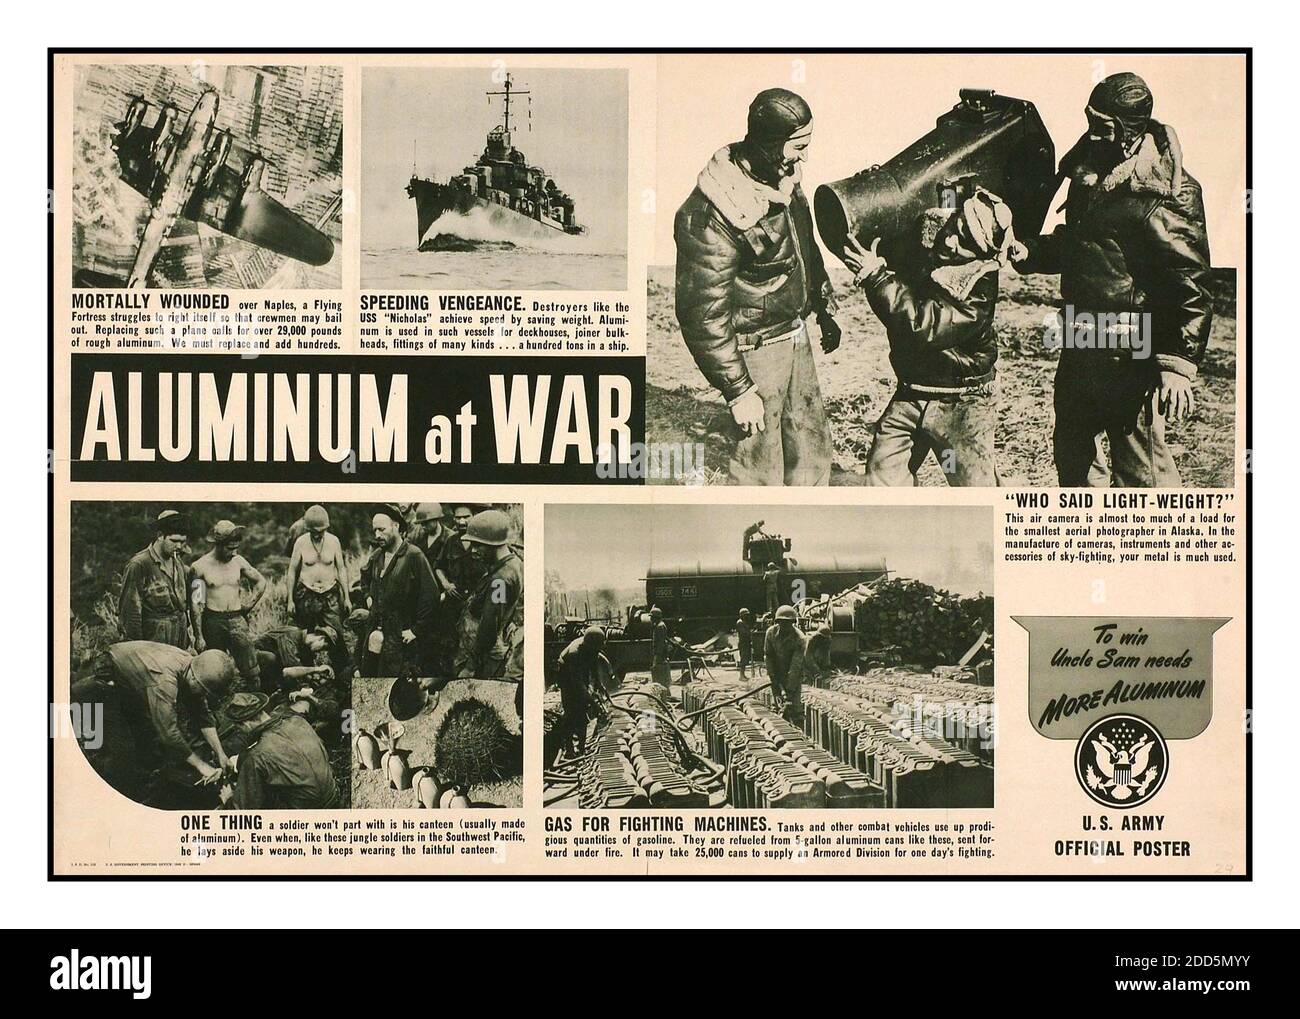 ALUMINIUM WW2 Vintage propagande des années 1940 la production de métal de guerre des États-Unis appel ressources ‘aluminium à la guerre’ US Army Official poster ‘ pour gagner l'oncle Sam a besoin de plus d'aluminium’ Seconde Guerre mondiale. WW2 Deuxième Guerre mondiale Banque D'Images